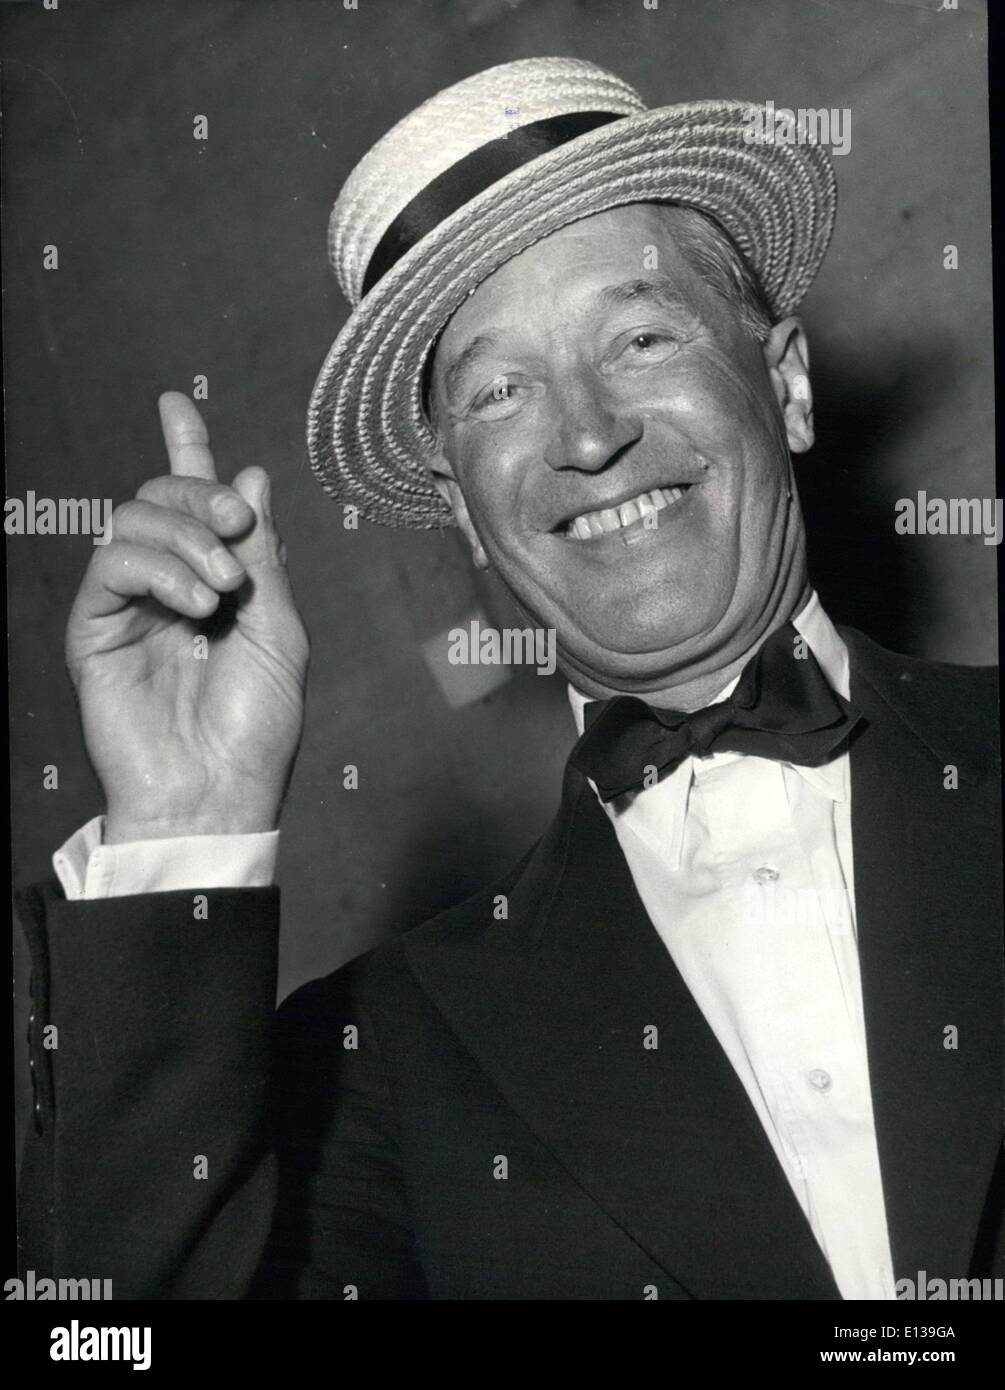 29 février 2012 - 75e anniversaire de Maurice Chevalier... Le 12 septembre, le célèbre Maurice Chevalier célébrera son 75e anniversaire, mais il continue à lui fournir dans le monde entier son one man show. Banque D'Images